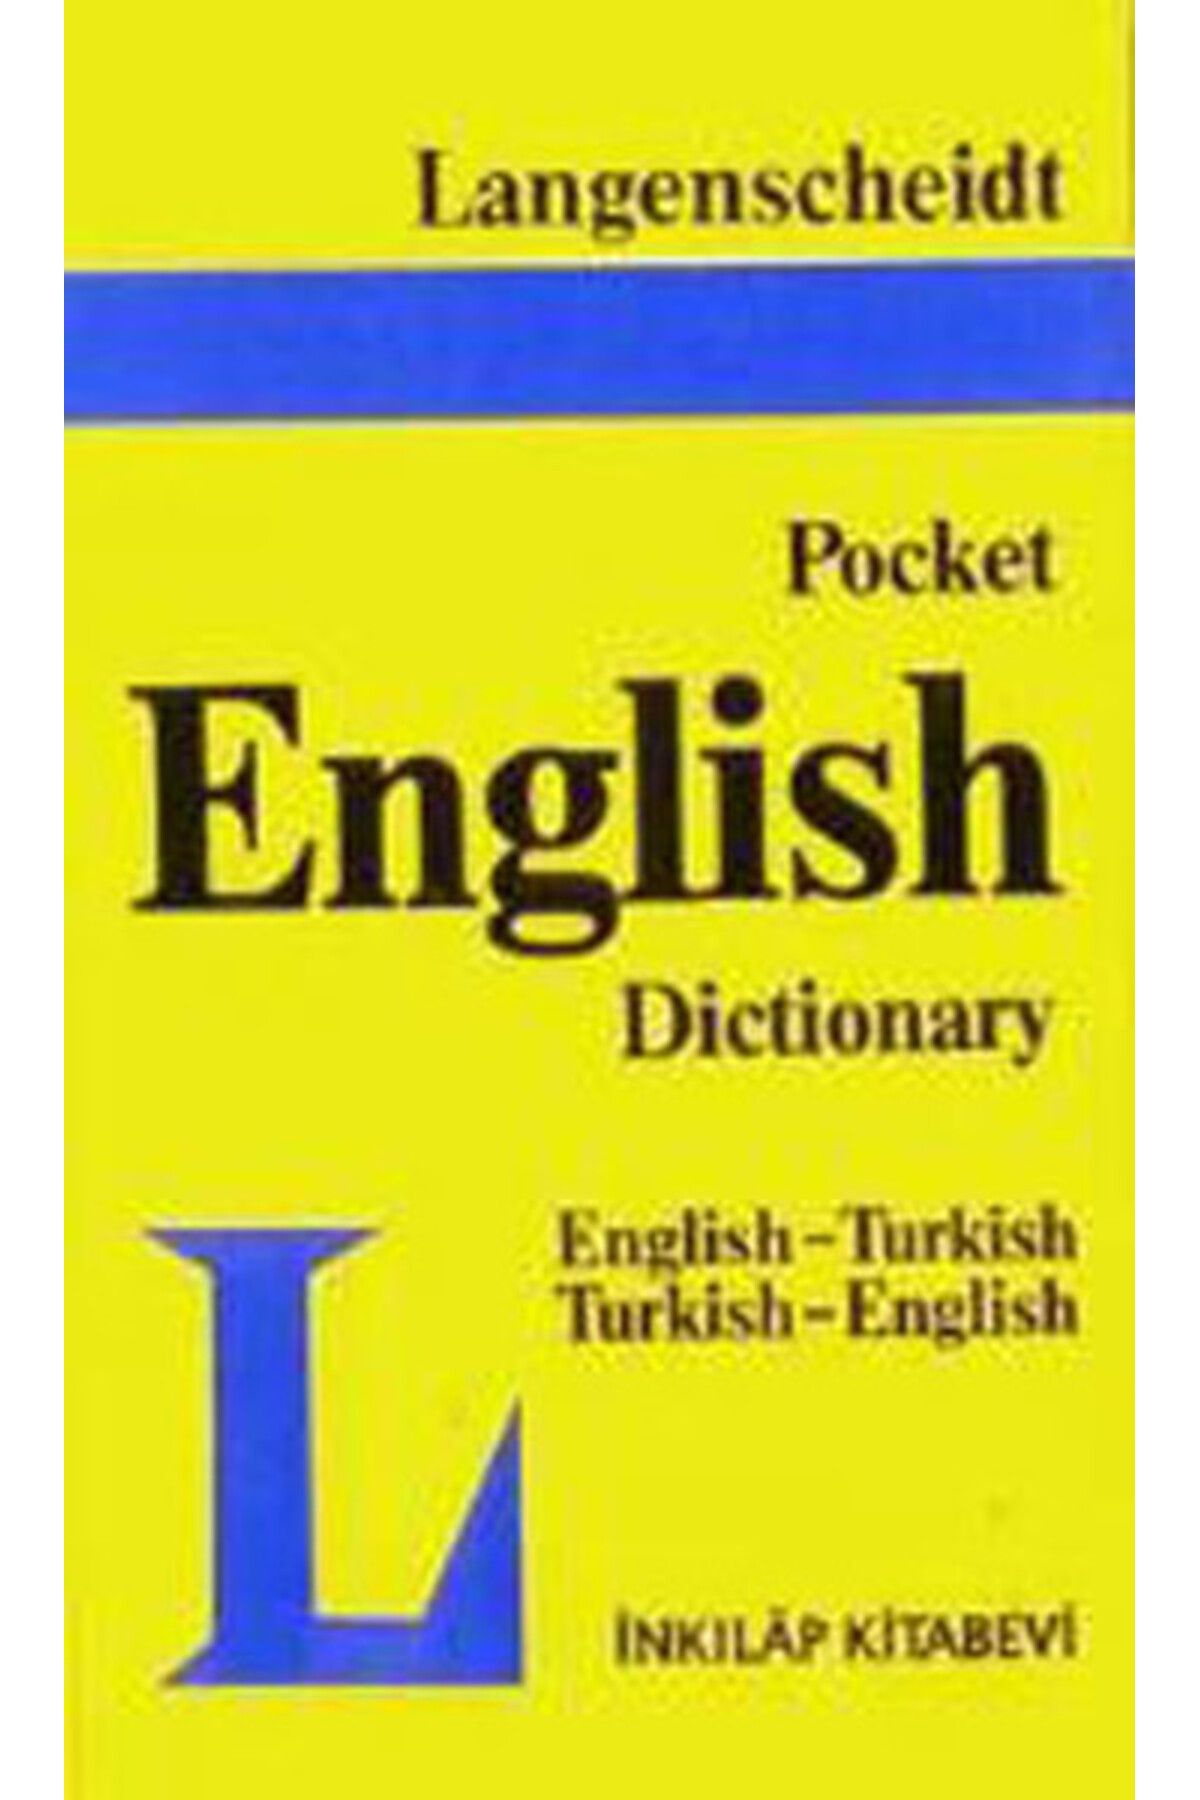 İnkılap Kitabevi Pocket English Dictionary / Ingilizce-türkçe Türkçe-ingilizce